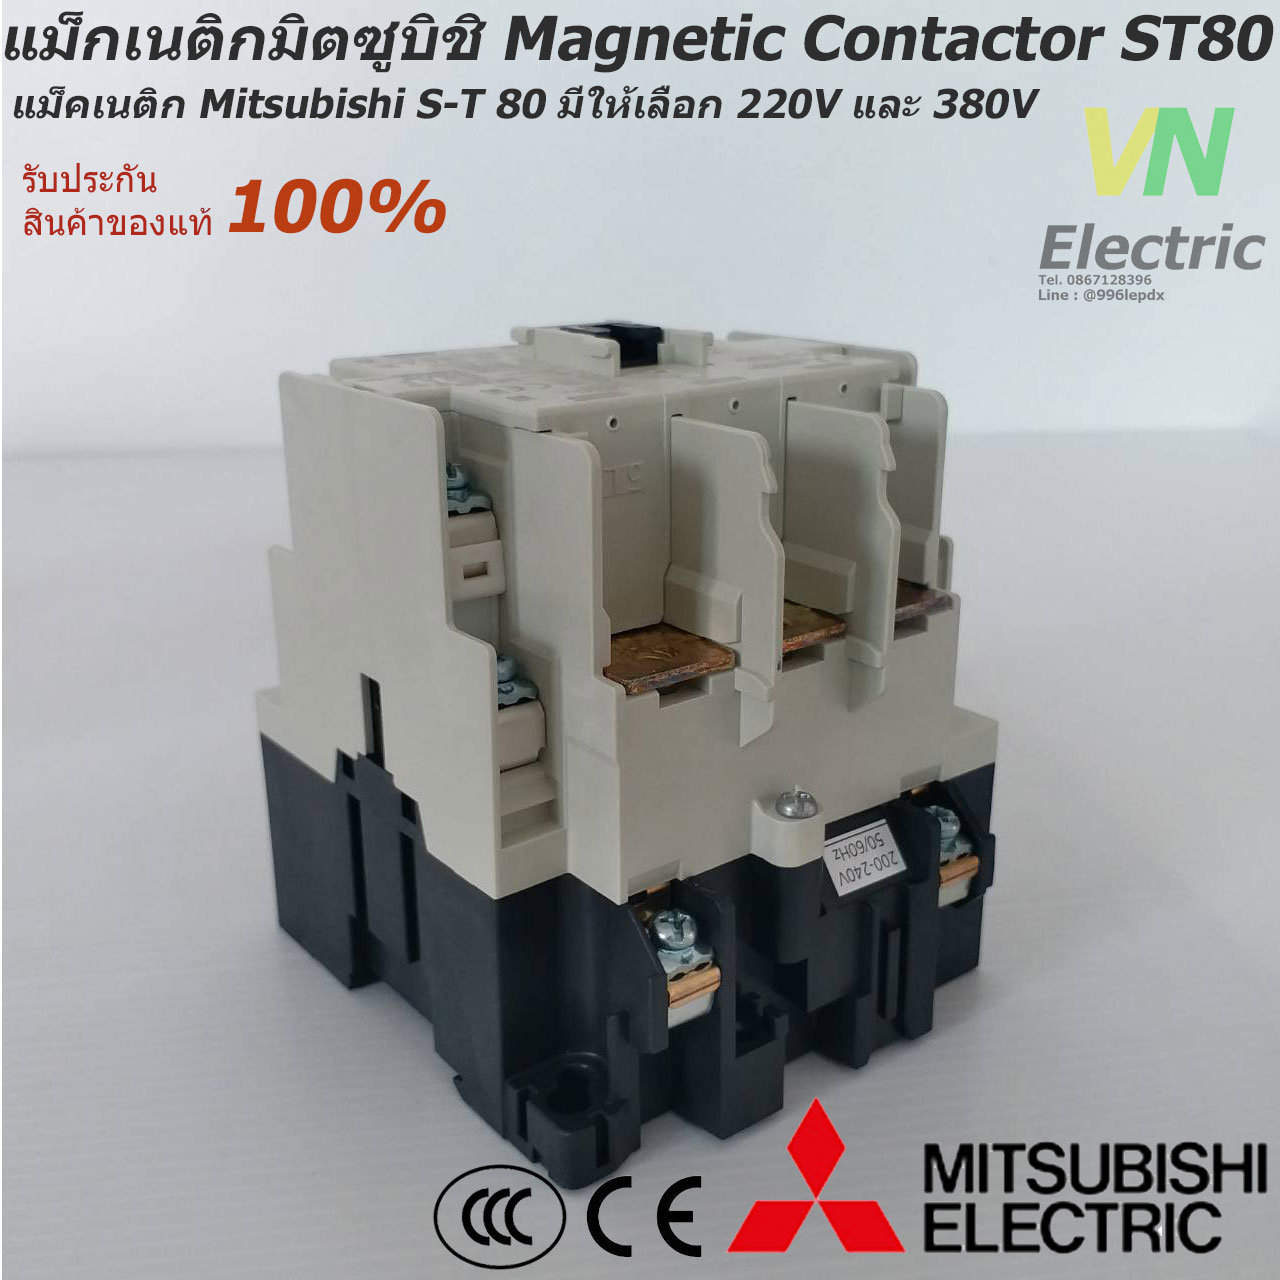 แม็กเนติกมิตซูบิชิ MITSUBISHI Magnetic Contactor S-T 80 220V-380V แม็คเนติก  ตัวเลือก คอยล์ 220 V.